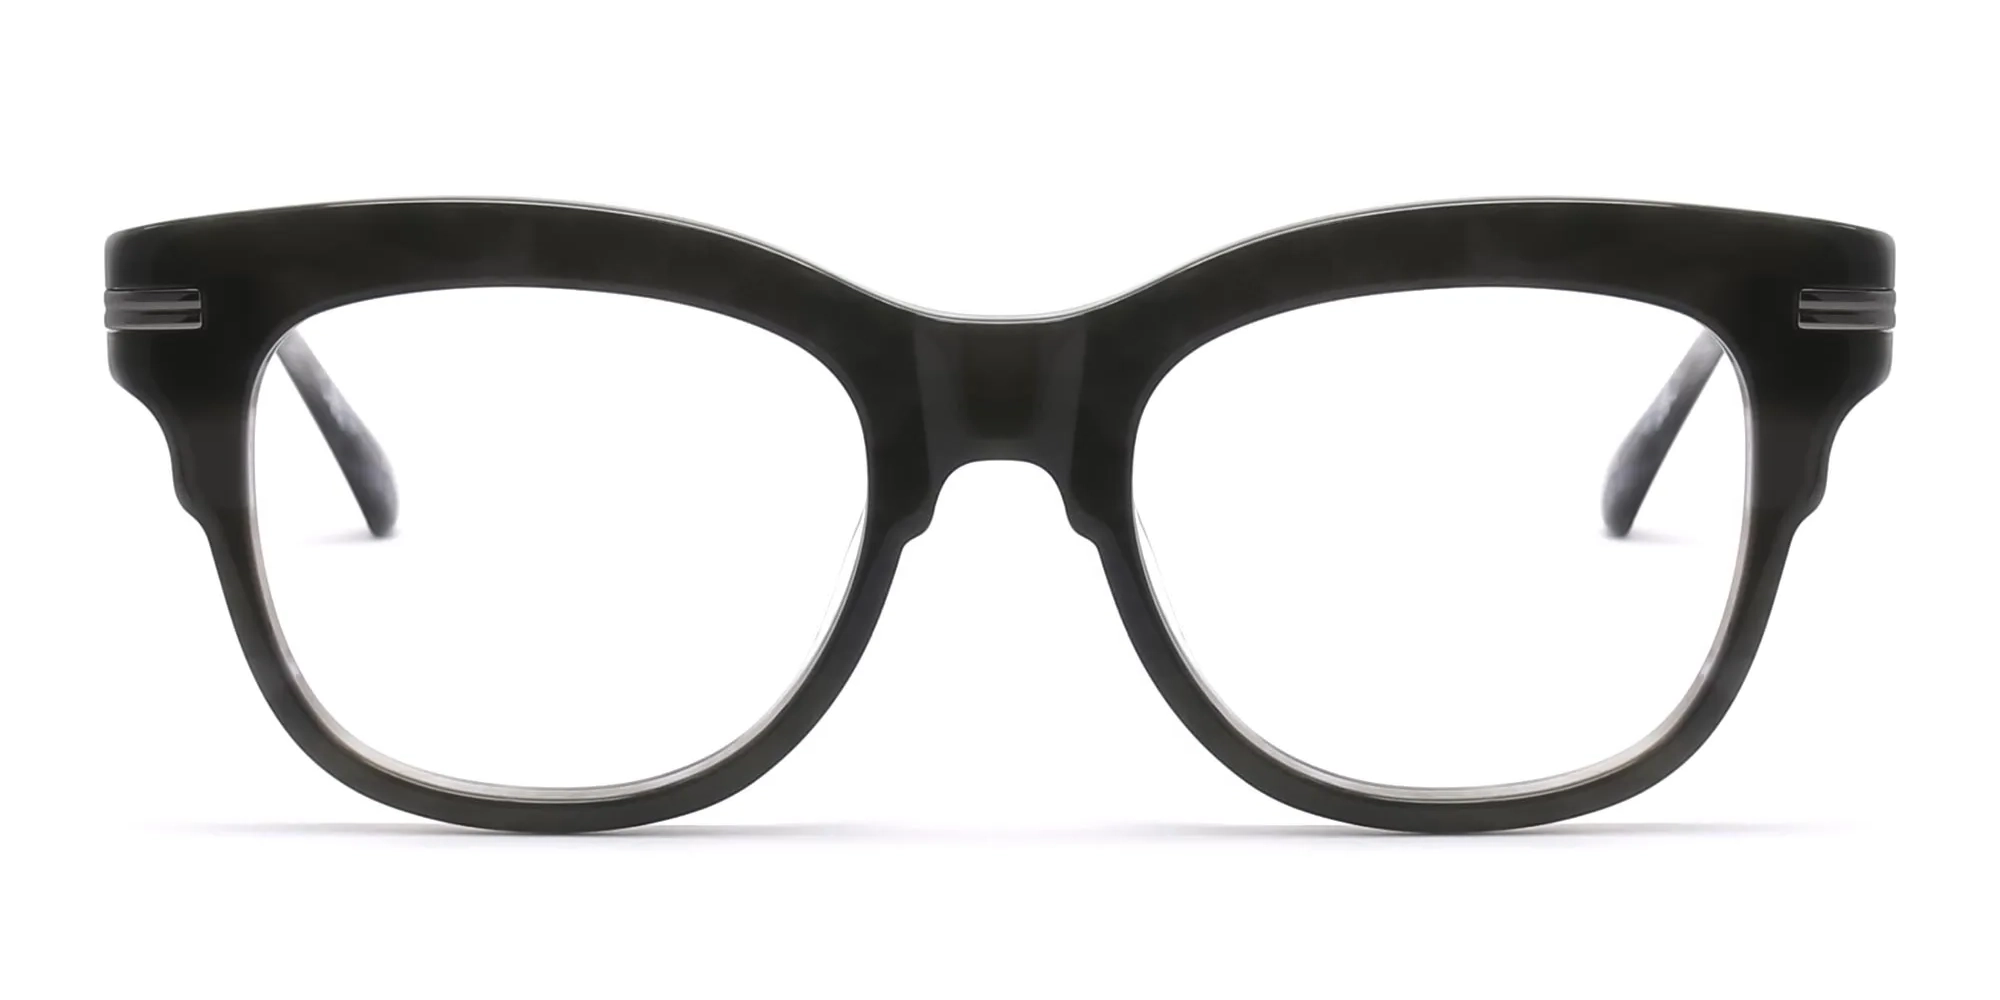 Grey cat eye glasses